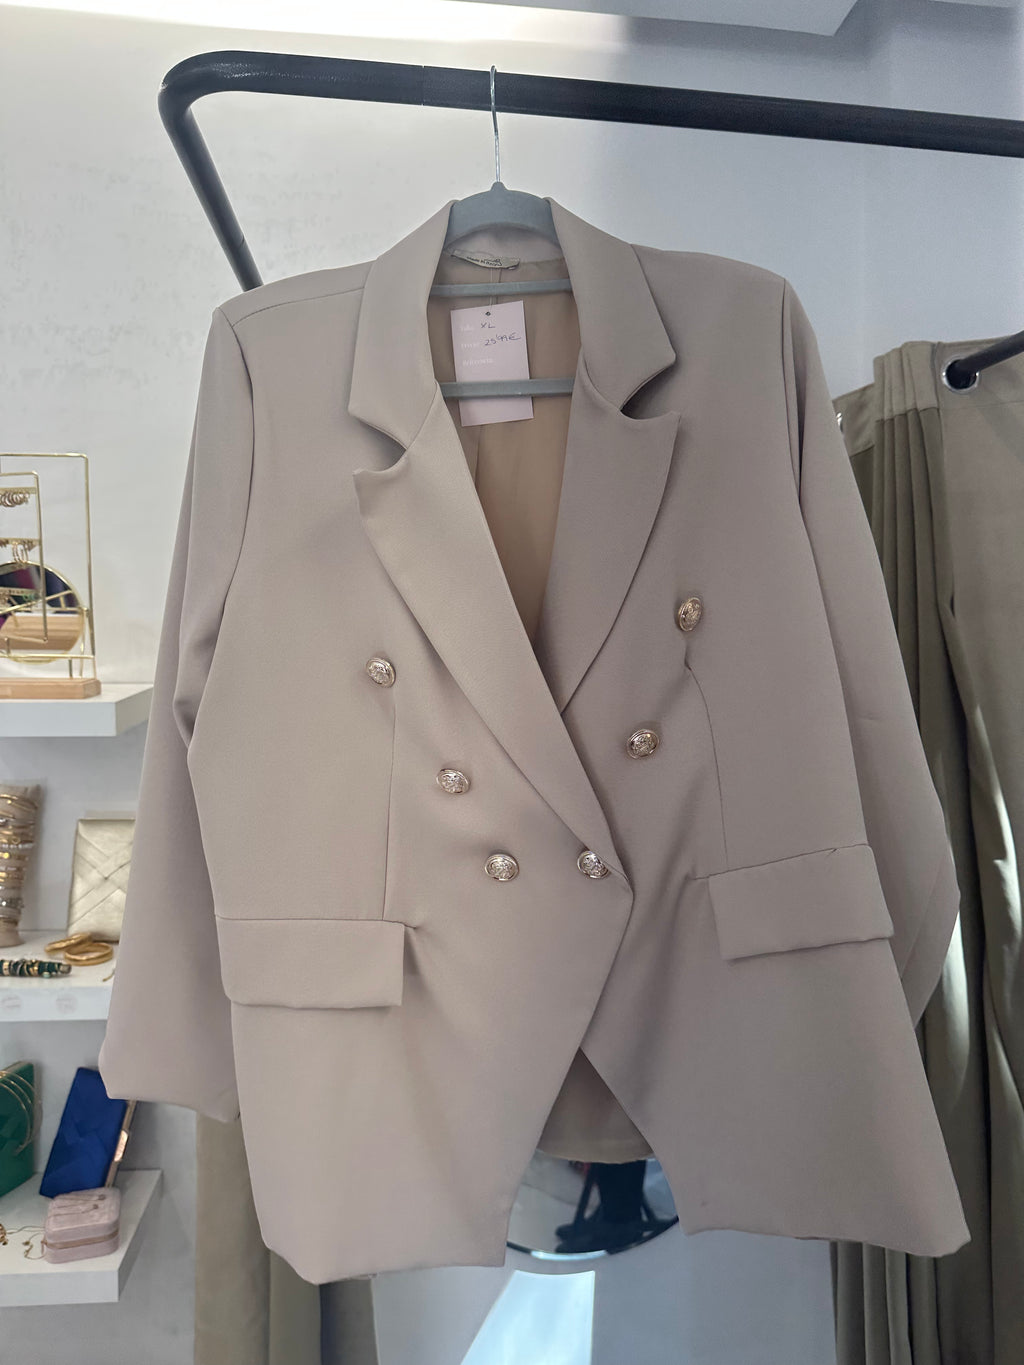 Claro, aquí tienes una La blazer XL beige con botones: un símbolo de elegancia amplia y moderna. Su tono neutro y corte holgado destacan en esta prenda versátil. Los botones añaden un toque refinado a este estilo casualmente sofisticado. Una declaración de moda en cada detalle.